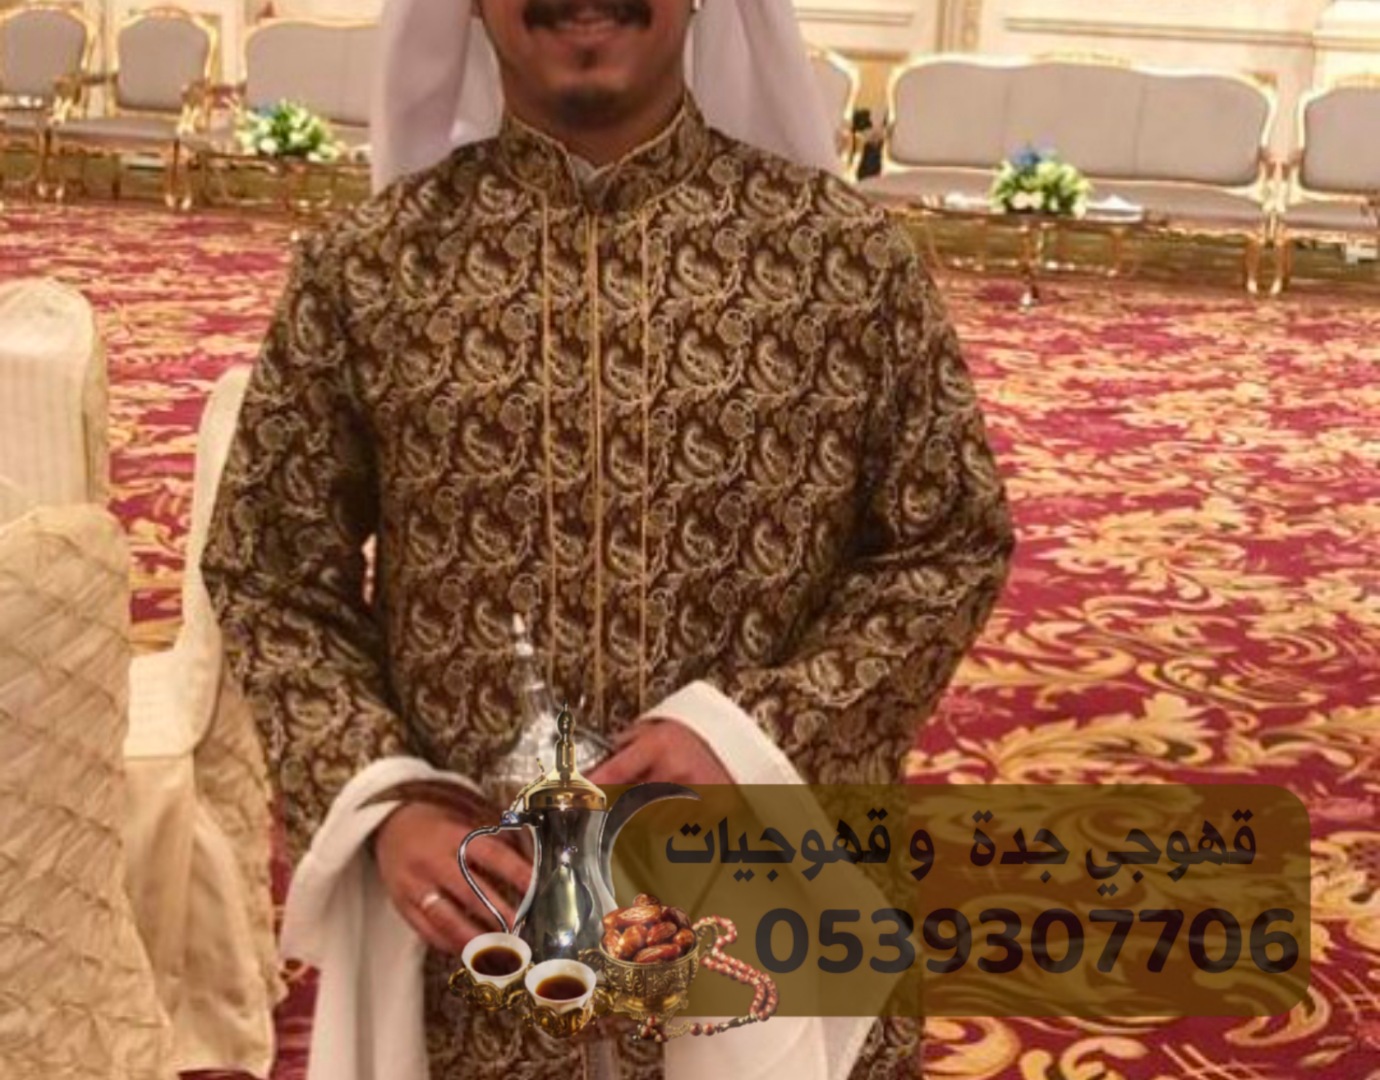 صبابين قهوة في جدة ومنسقين حفلات 0539307706 170550065681974